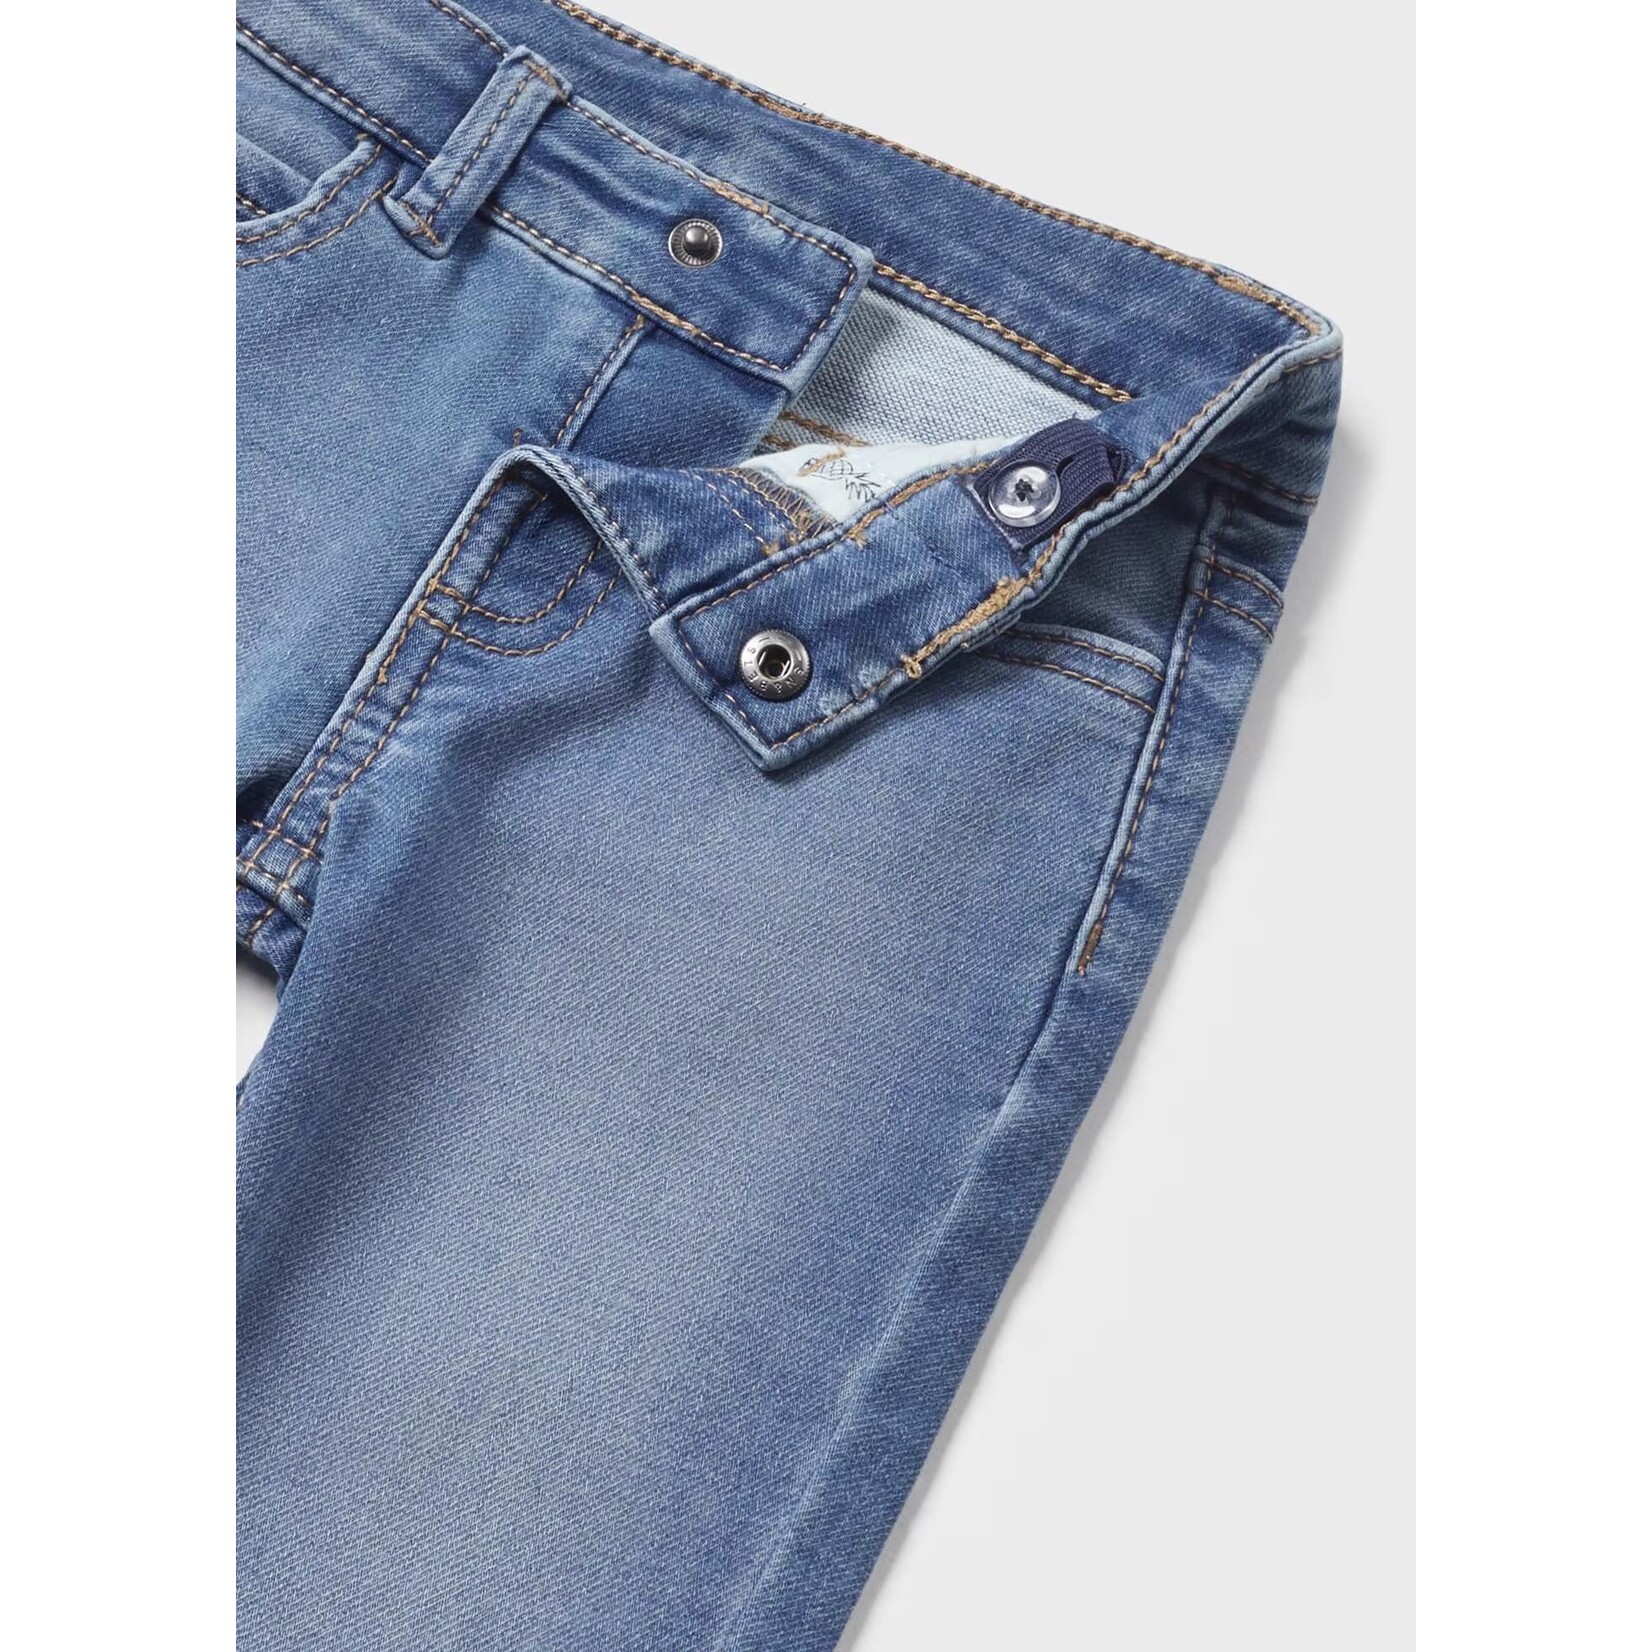 Mayoral Mayoral - 5 Pocket Jean in Medium Wash